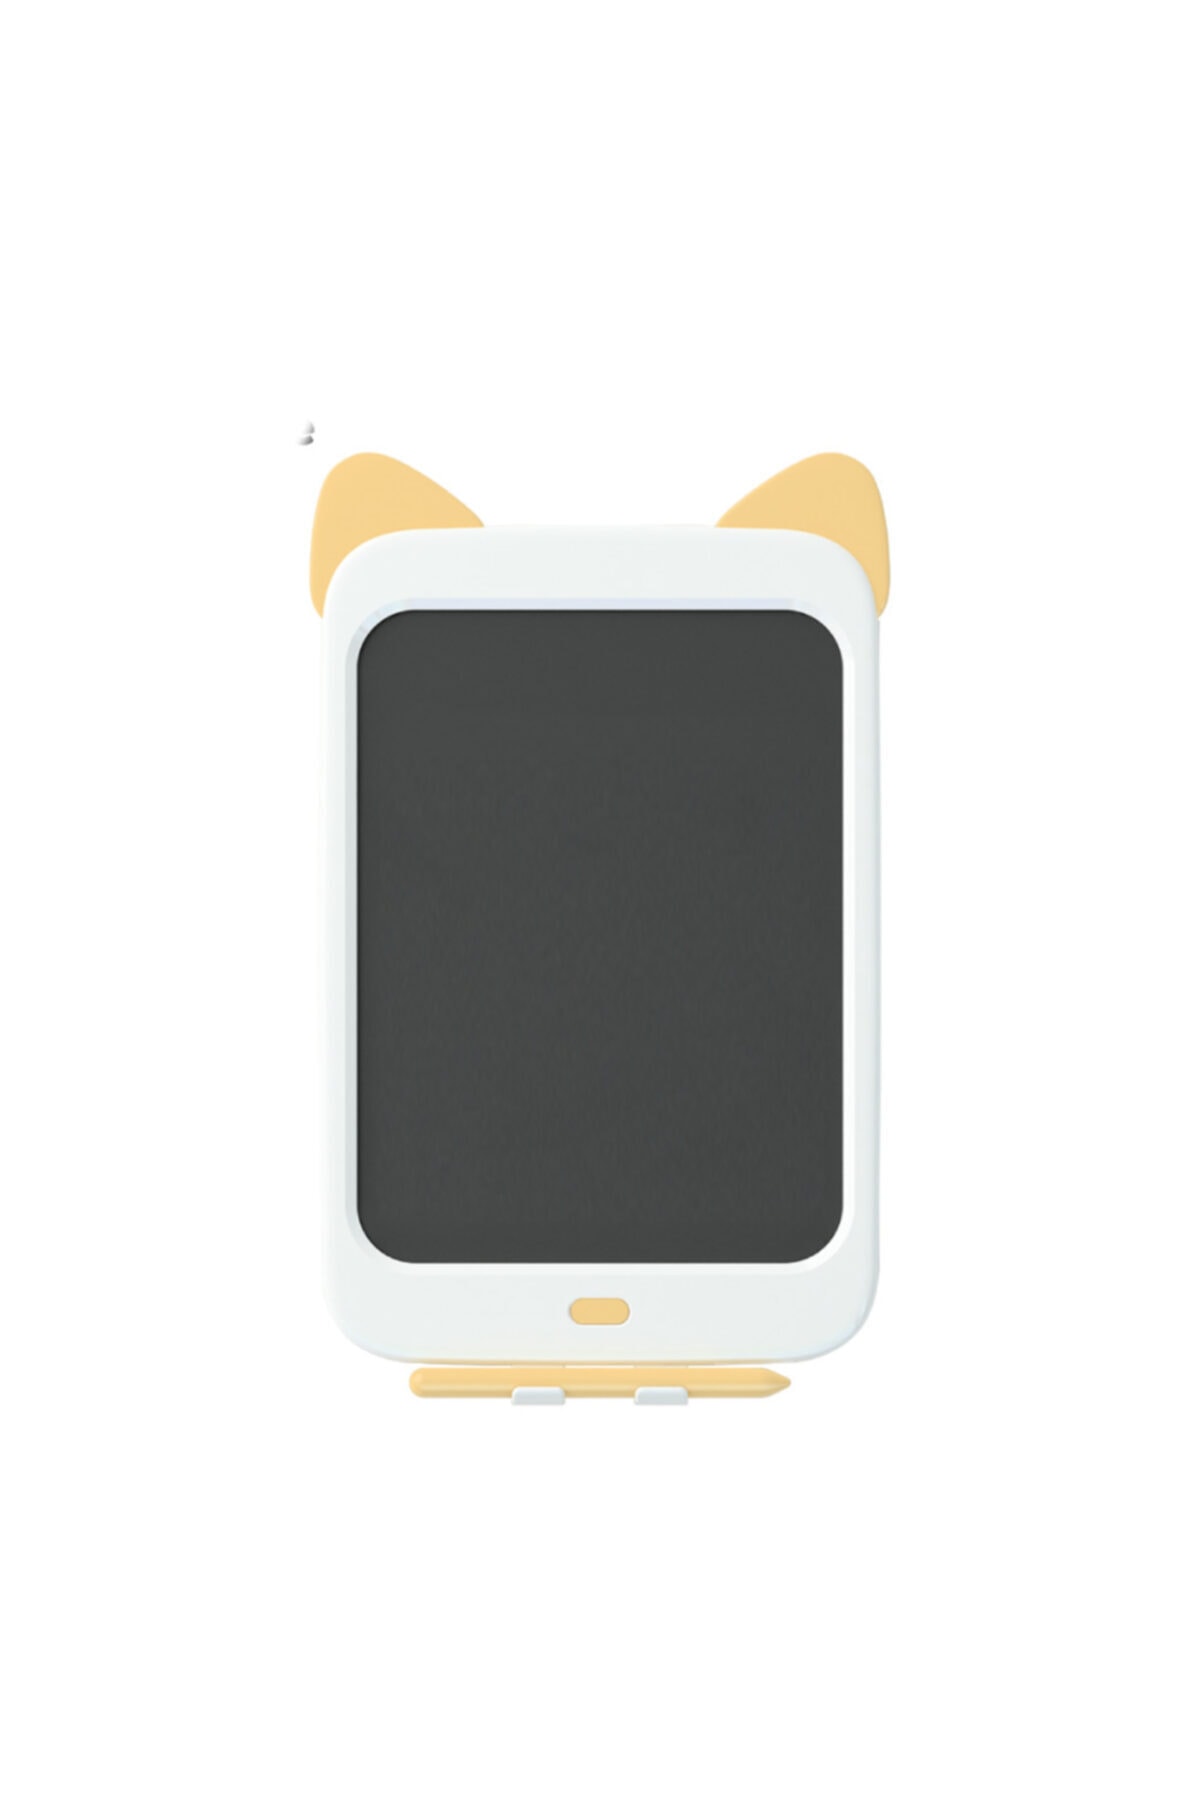 Xiaomi Wicue 10 Sarı Kedi Lcd Dijital Renkli Çizim Tableti